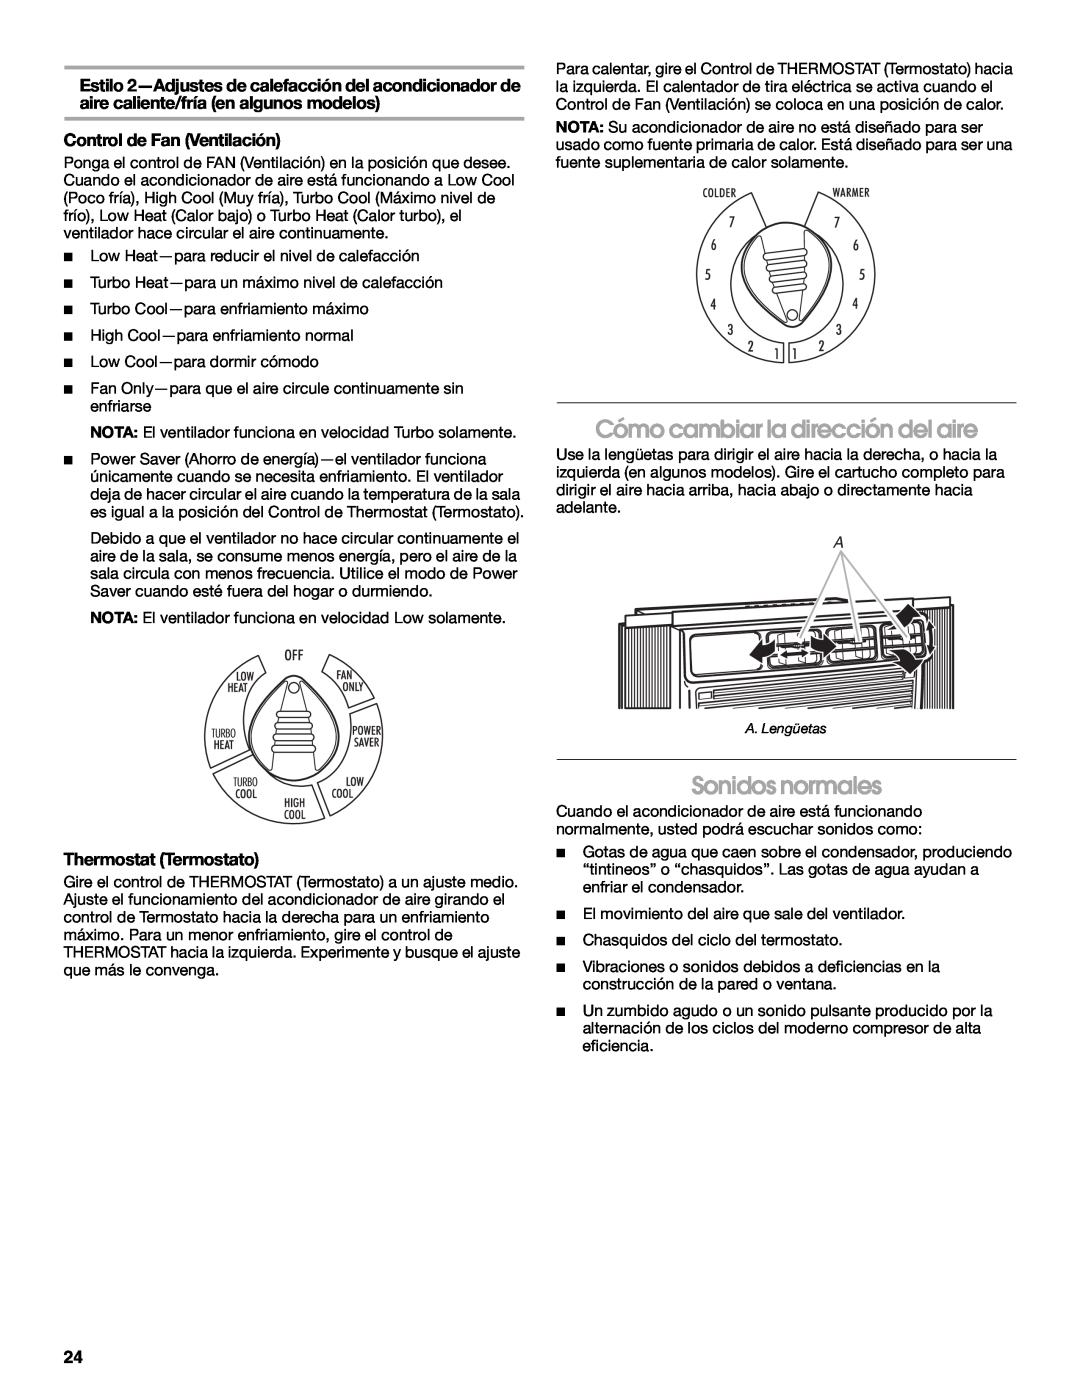 Whirlpool ACE082XP1 manual Cómo cambiar la dirección del aire, Sonidos normales, Control de Fan Ventilación 